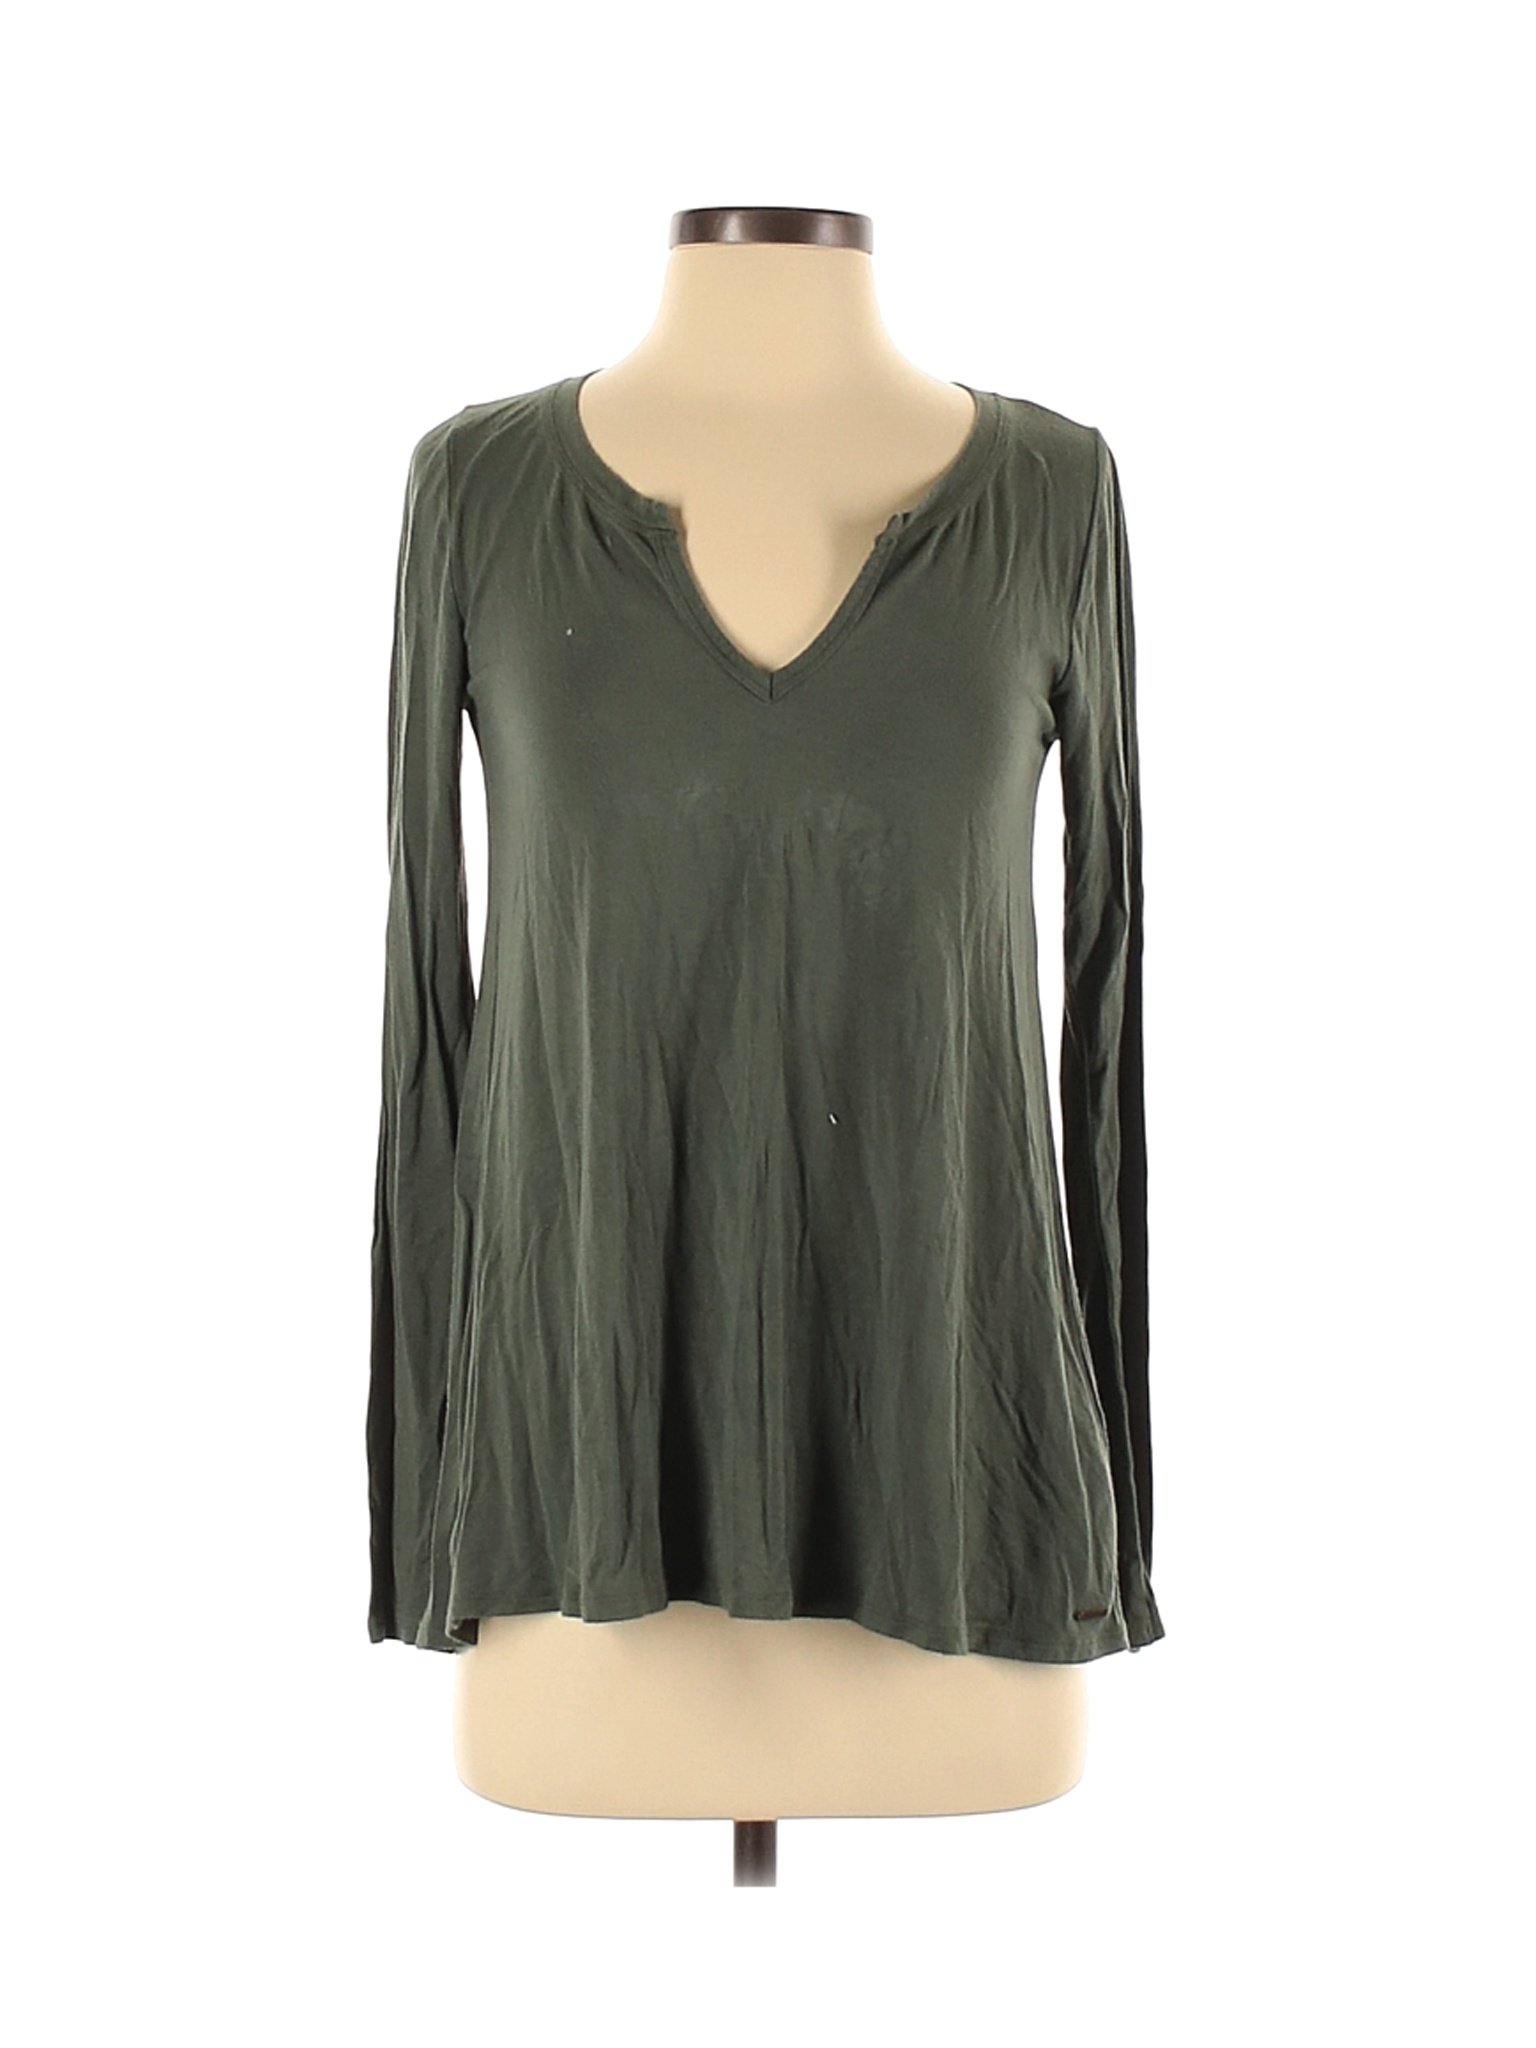 Hollister Women Green Long Sleeve T-Shirt S | eBay